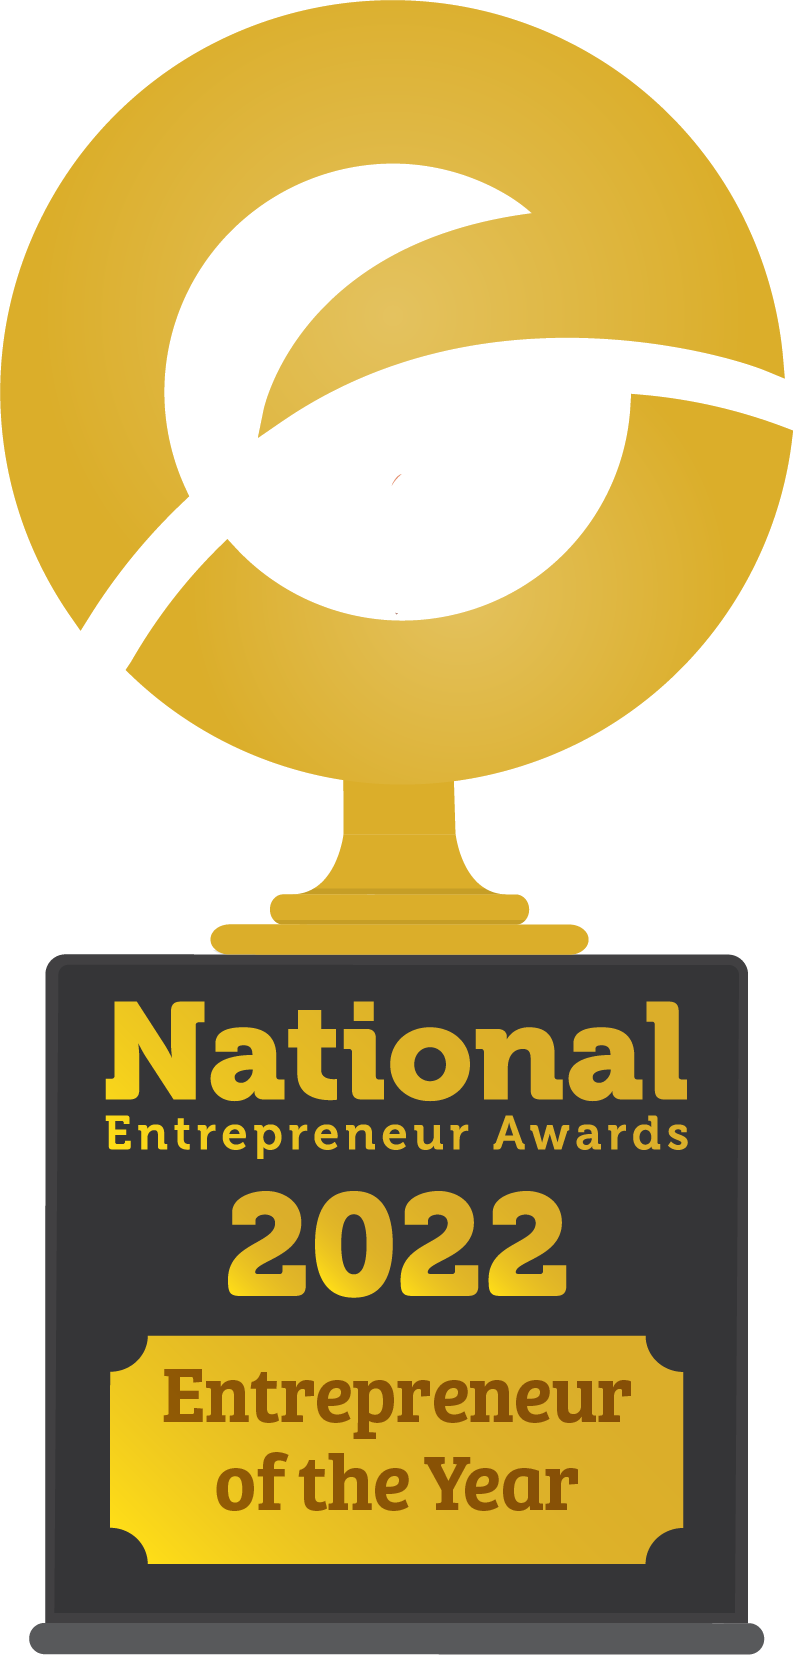 The 9th Annual National Entrepreneur Awards Celebrating Entrepreneurs